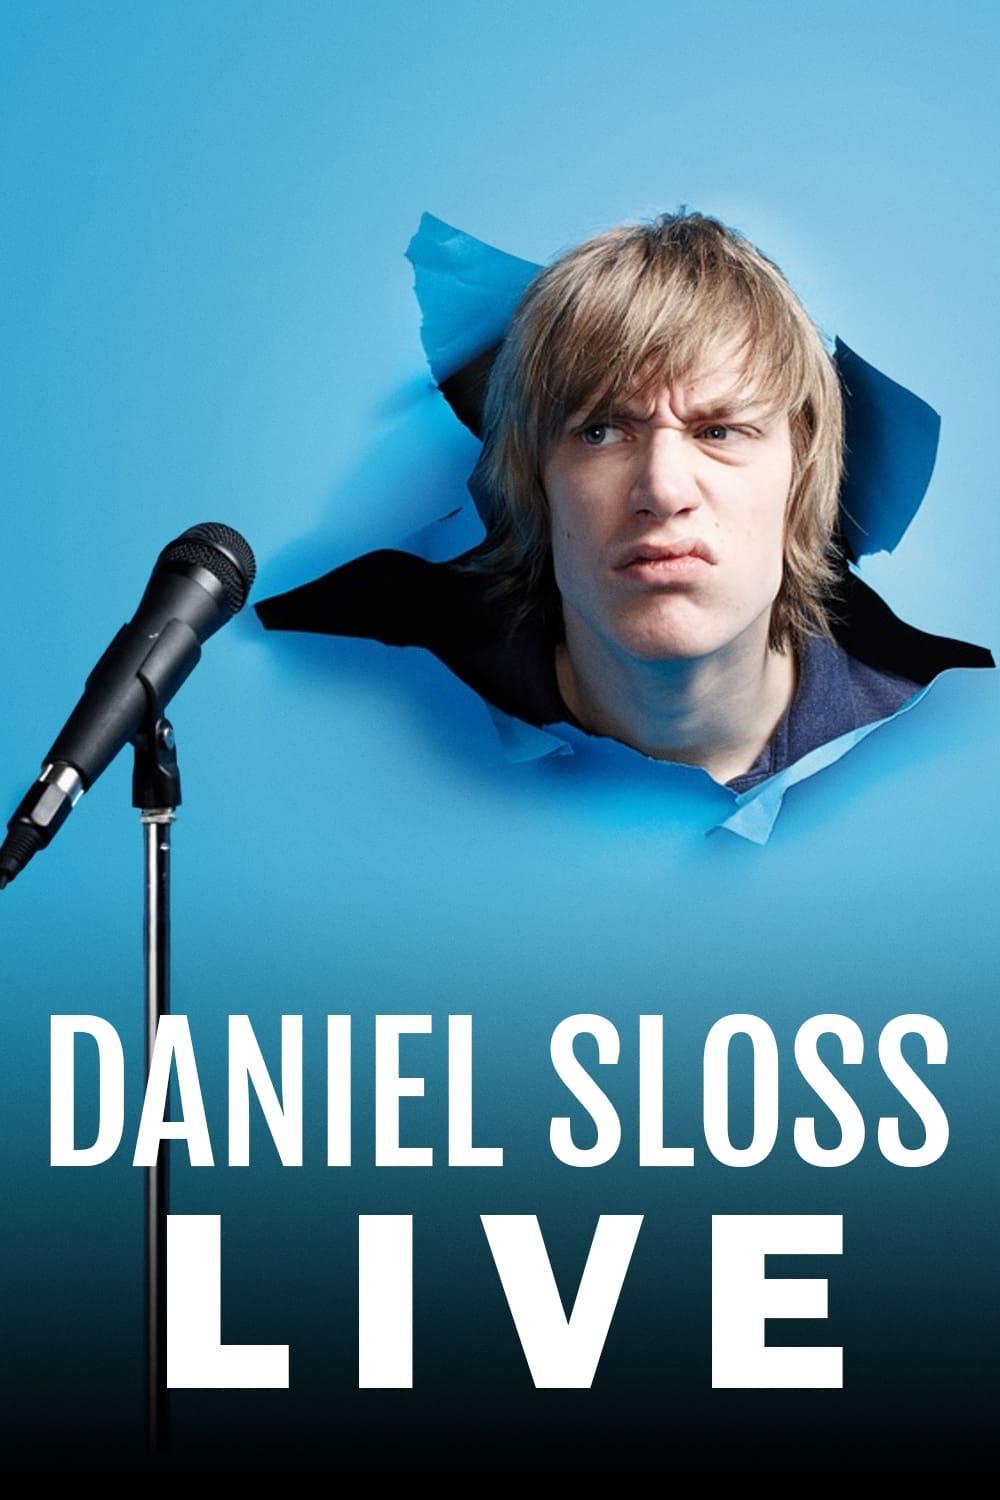 Daniel Sloss Live poster